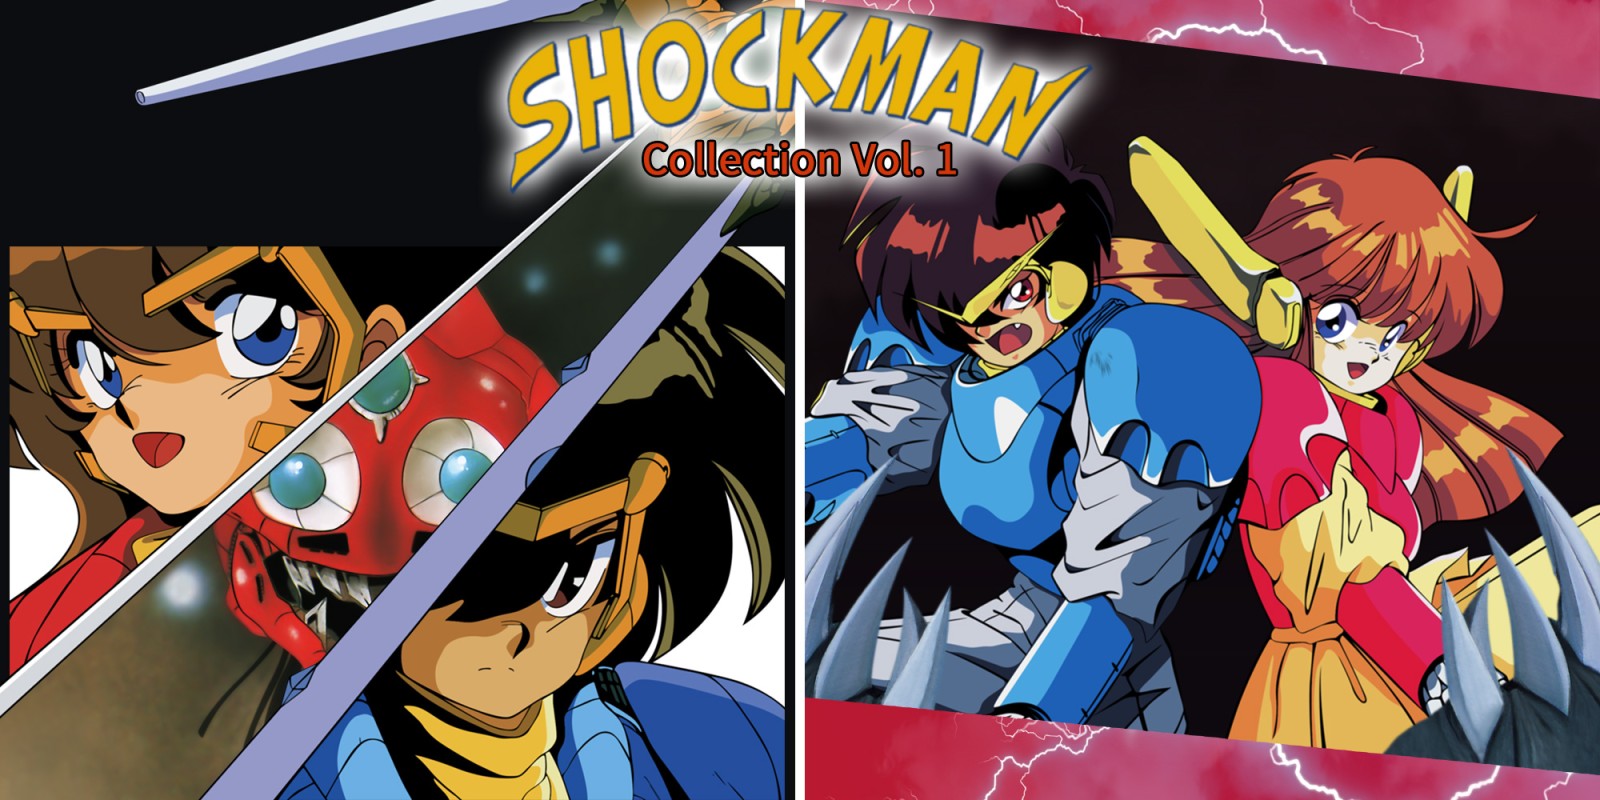 Shockman Collection Vol. 1